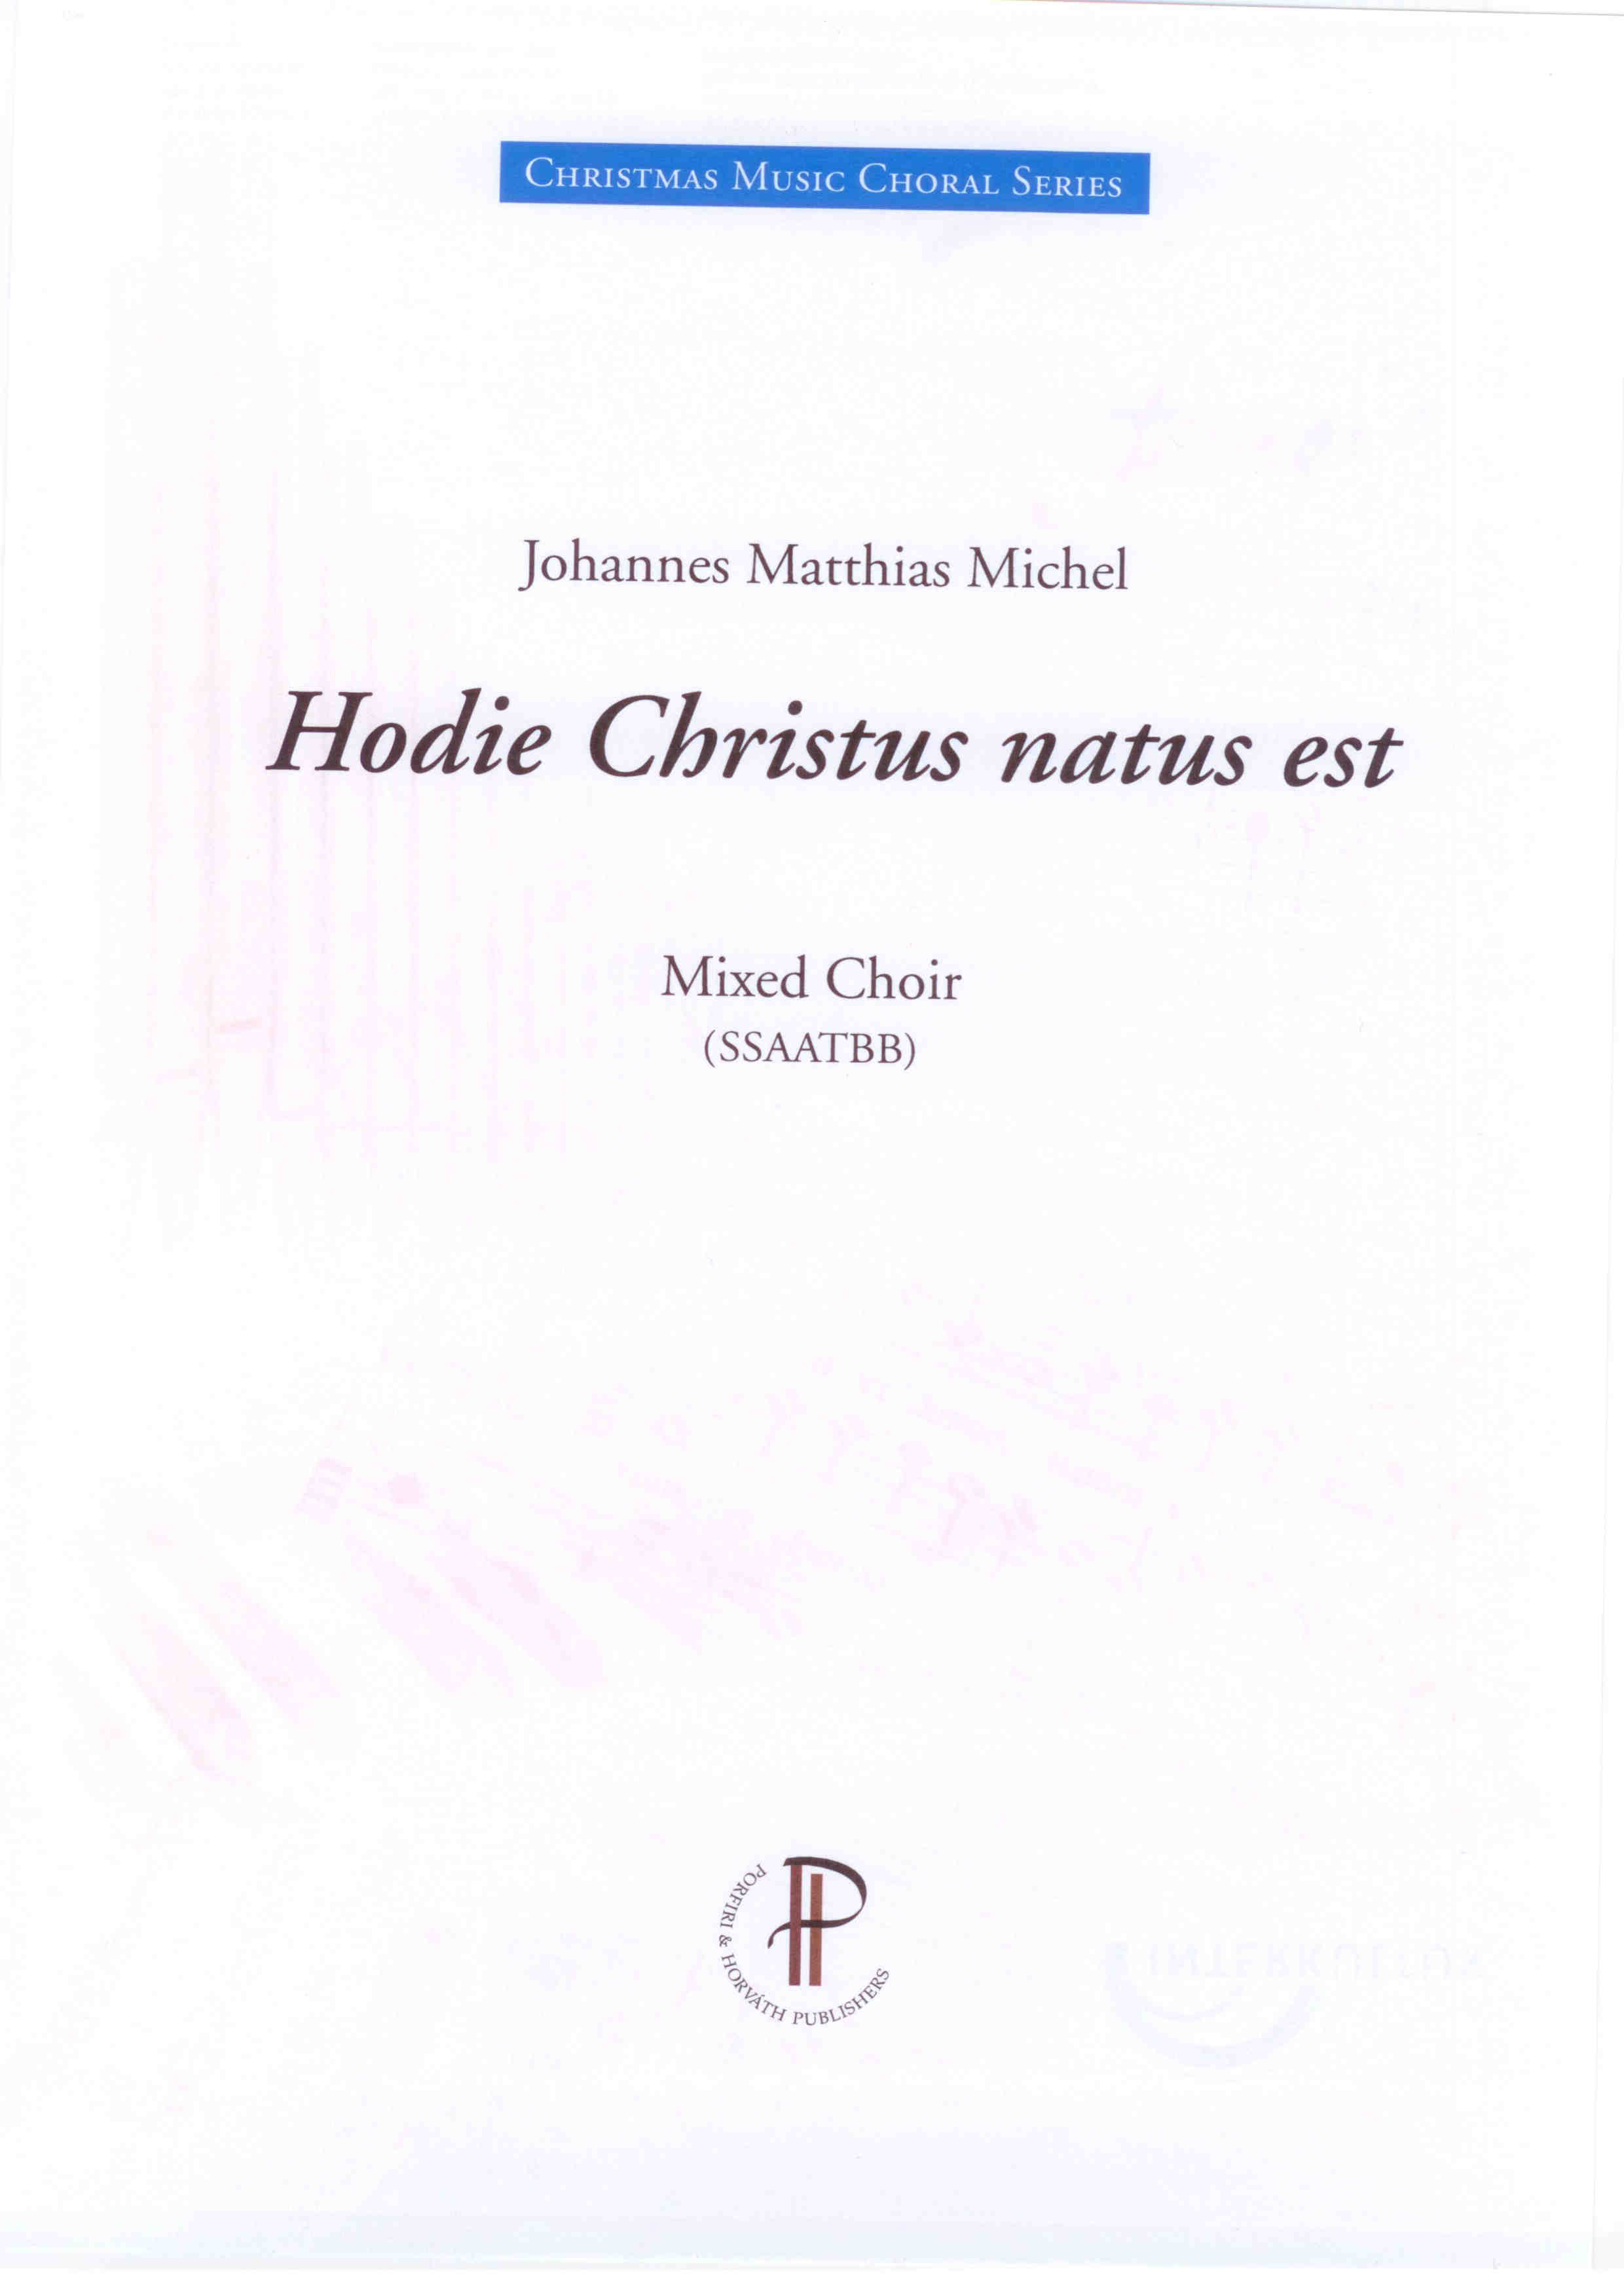 Hodie Christus natus est - Show sample score